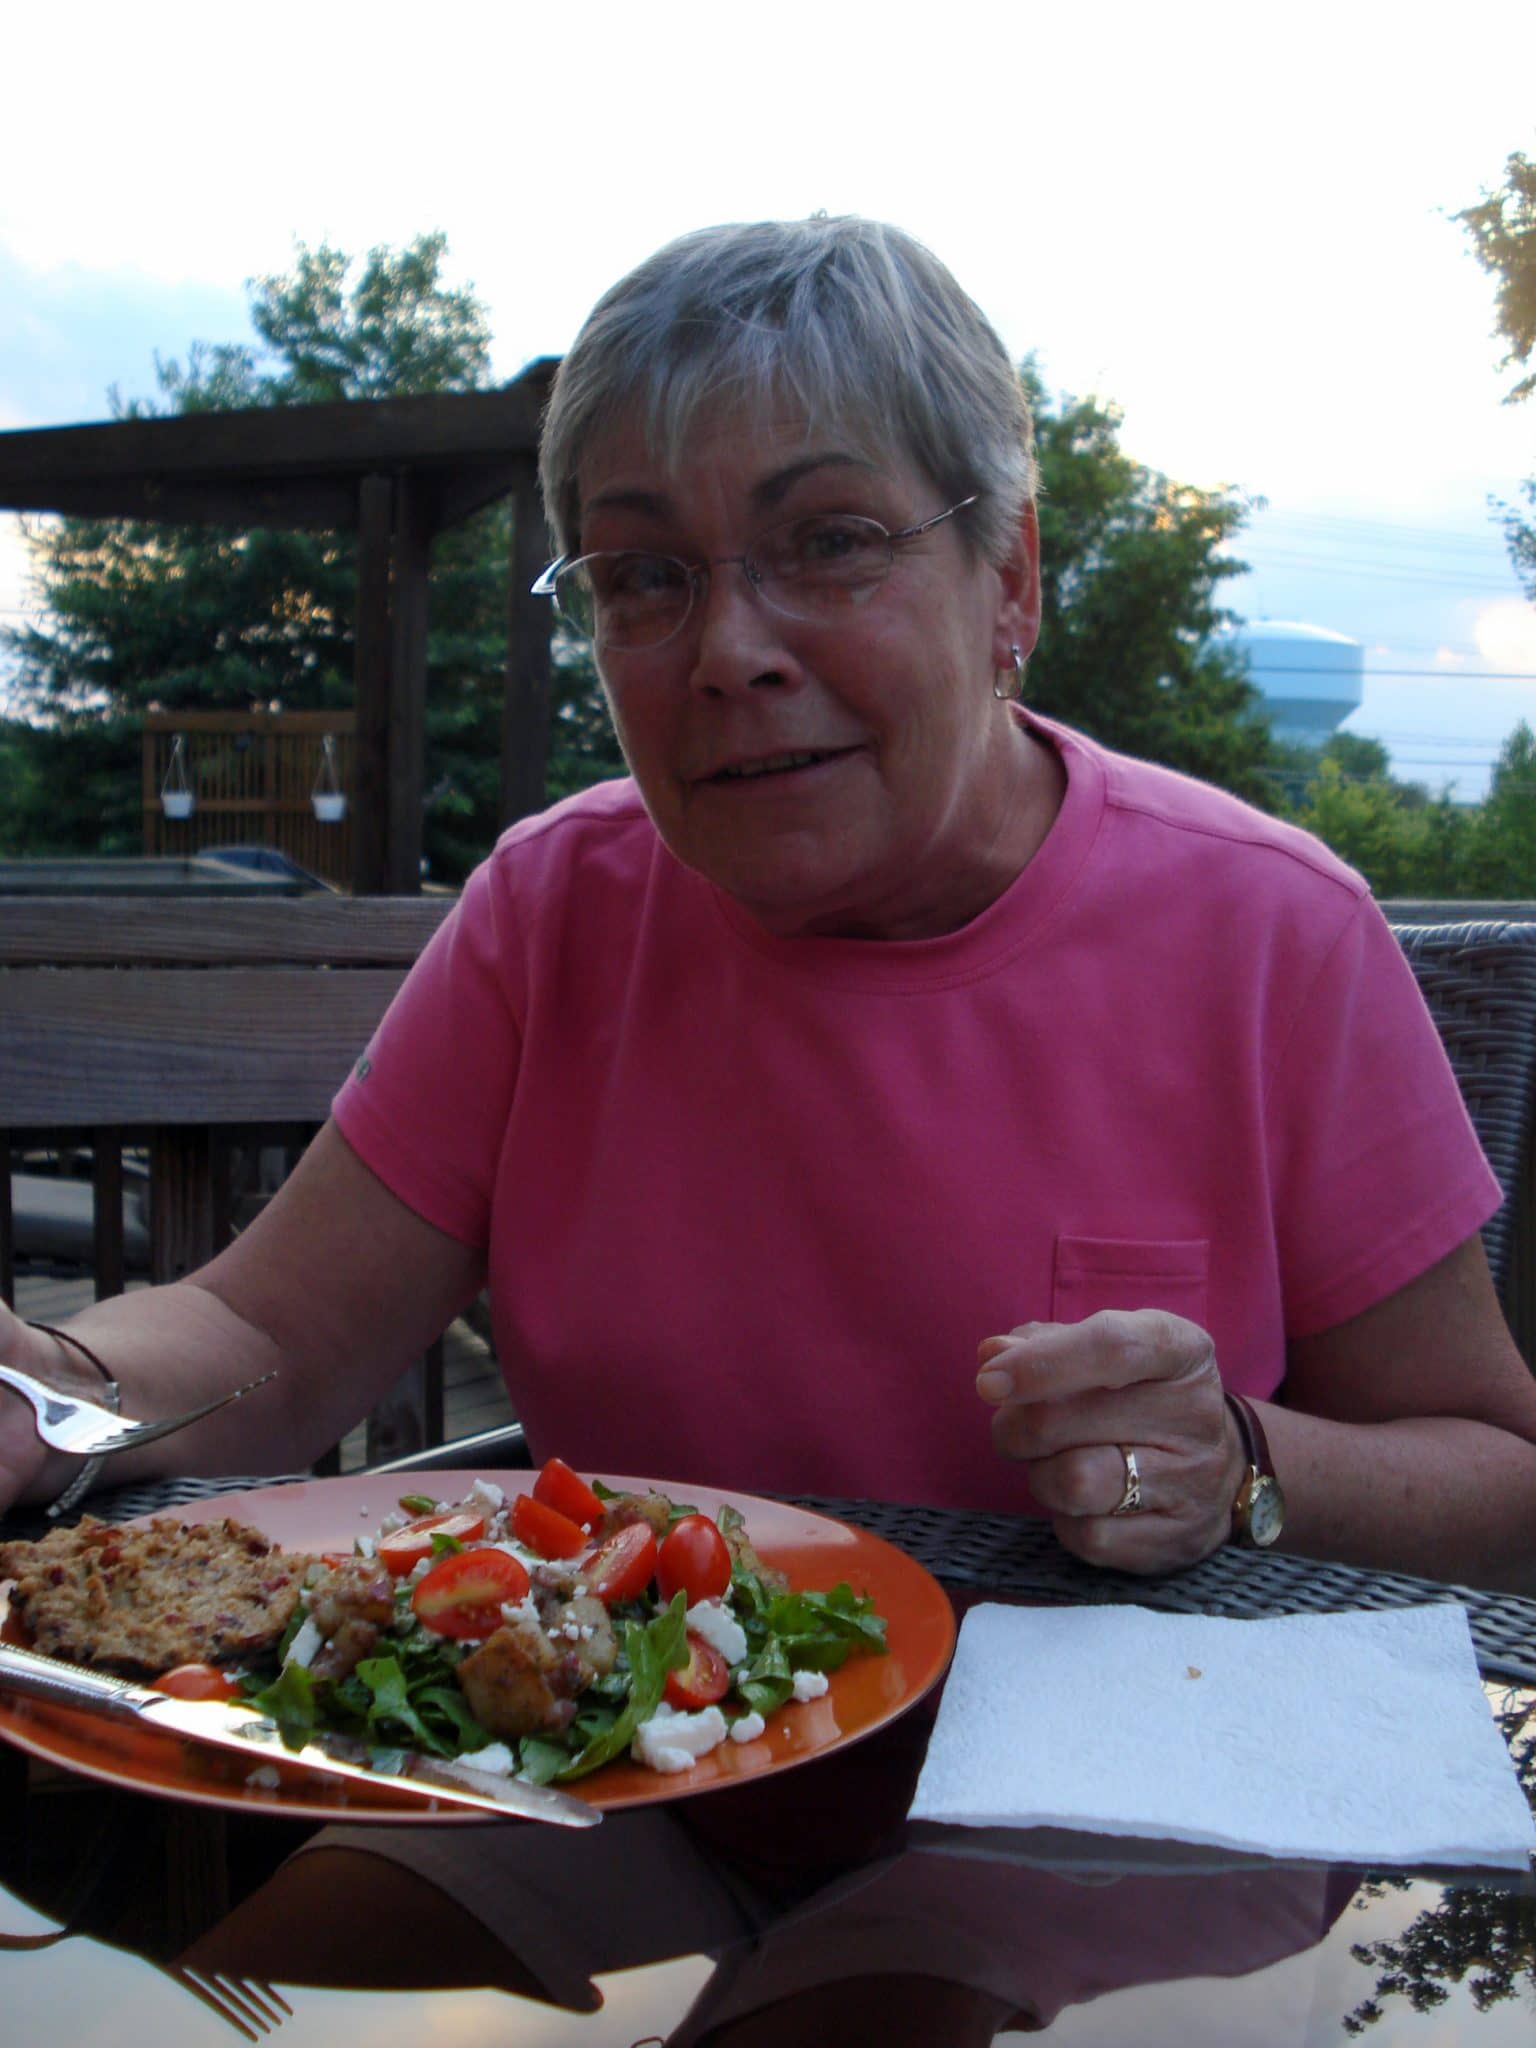 Mother in law eating vegan dinner